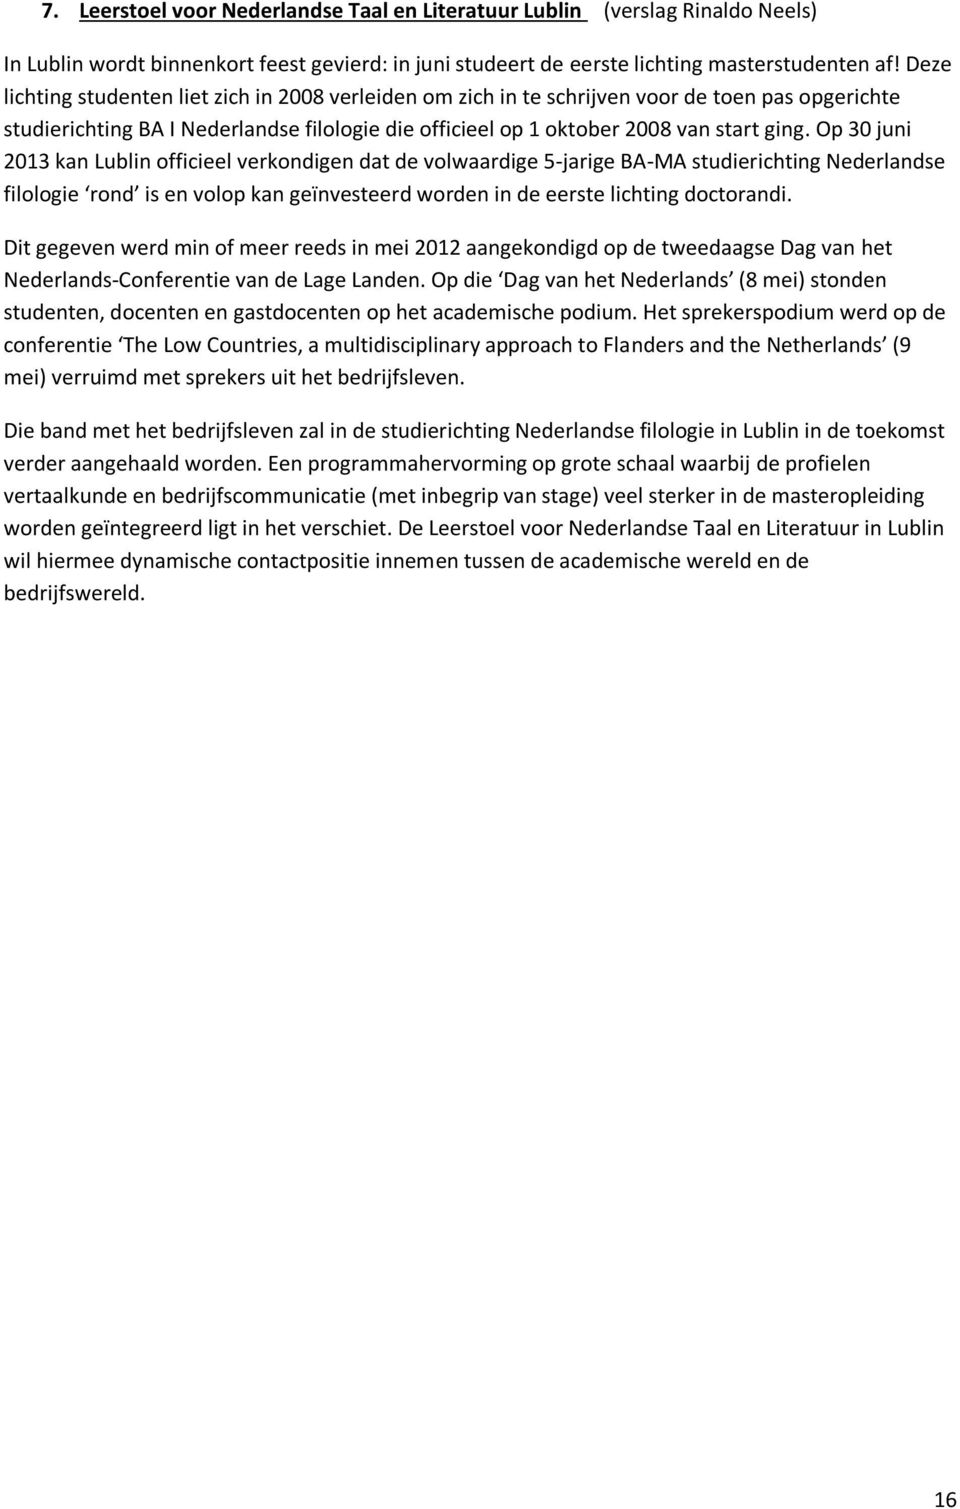 Op 30 juni 2013 kan Lublin officieel verkondigen dat de volwaardige 5-jarige BA-MA studierichting Nederlandse filologie rond is en volop kan geïnvesteerd worden in de eerste lichting doctorandi.